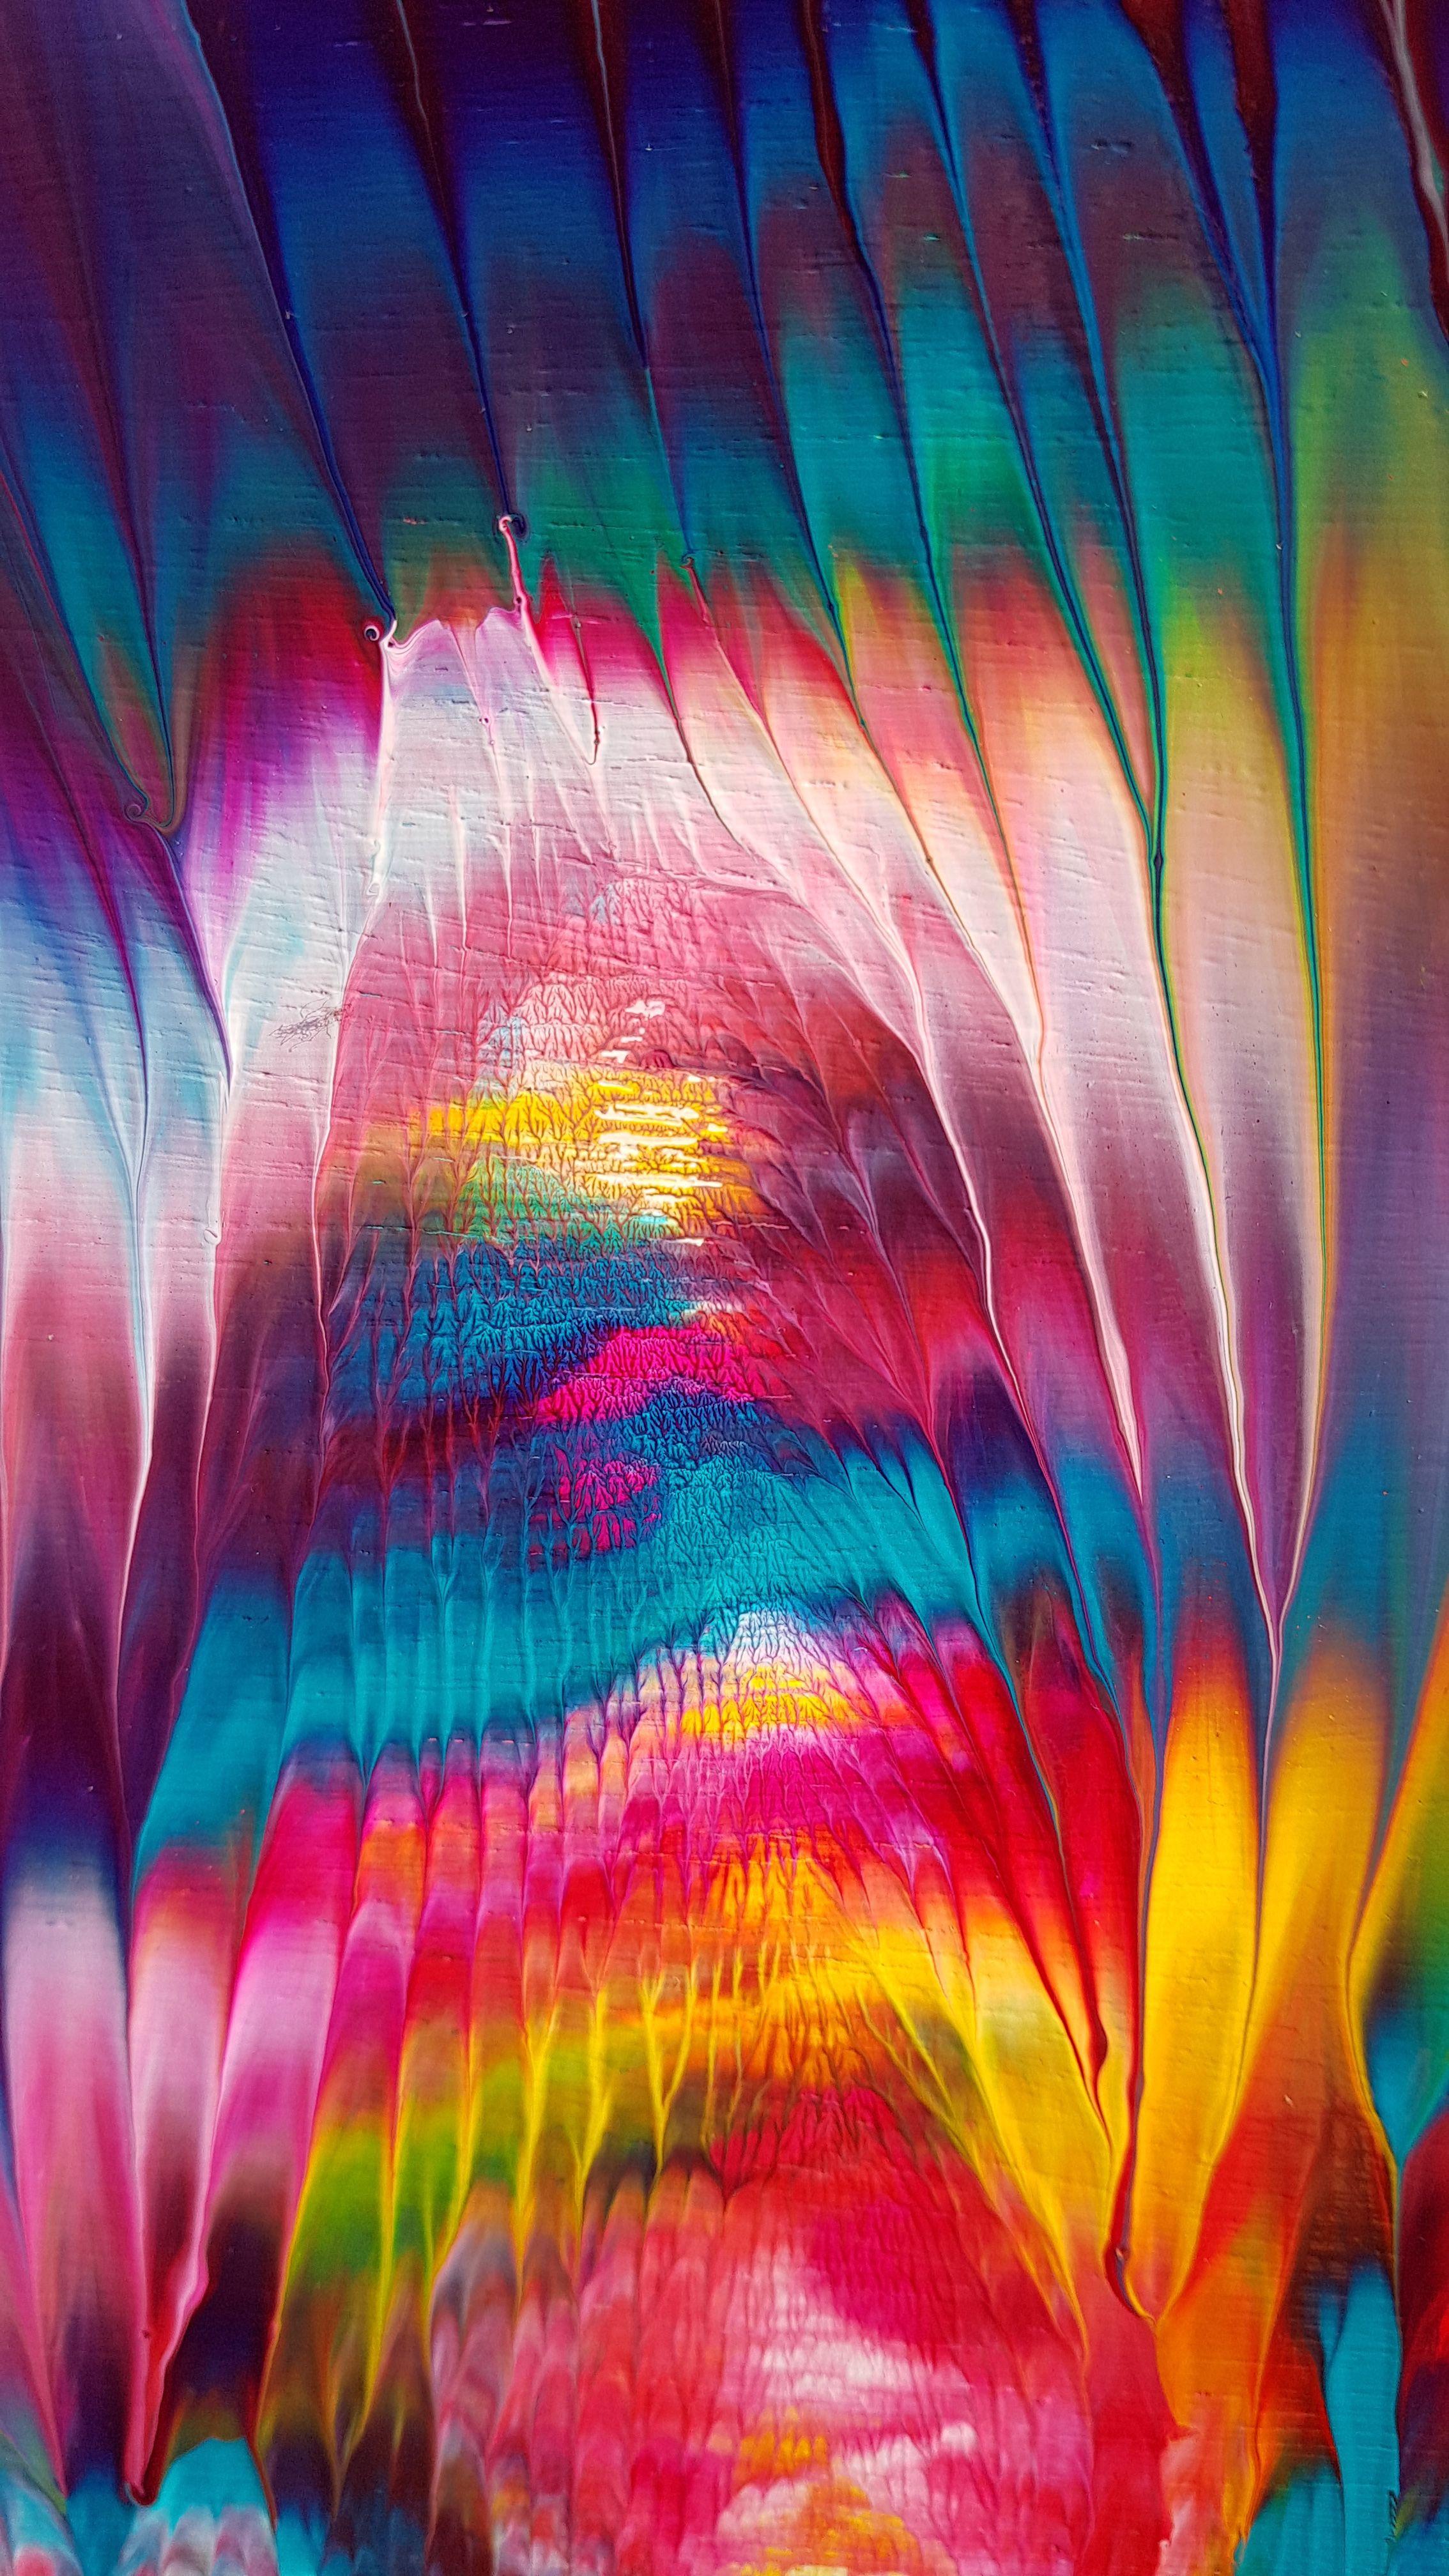 Inside Joseph's Dreamcoat IV ist ein abstraktes expressionistisches Gemälde mit Lebendigkeit, leuchtenden Farben, einzigartiger Textur und Hochglanzoberfläche. Die leuchtenden Pink- und Fuchsienfarben bilden einen schönen Kontrast zu den Türkis- und